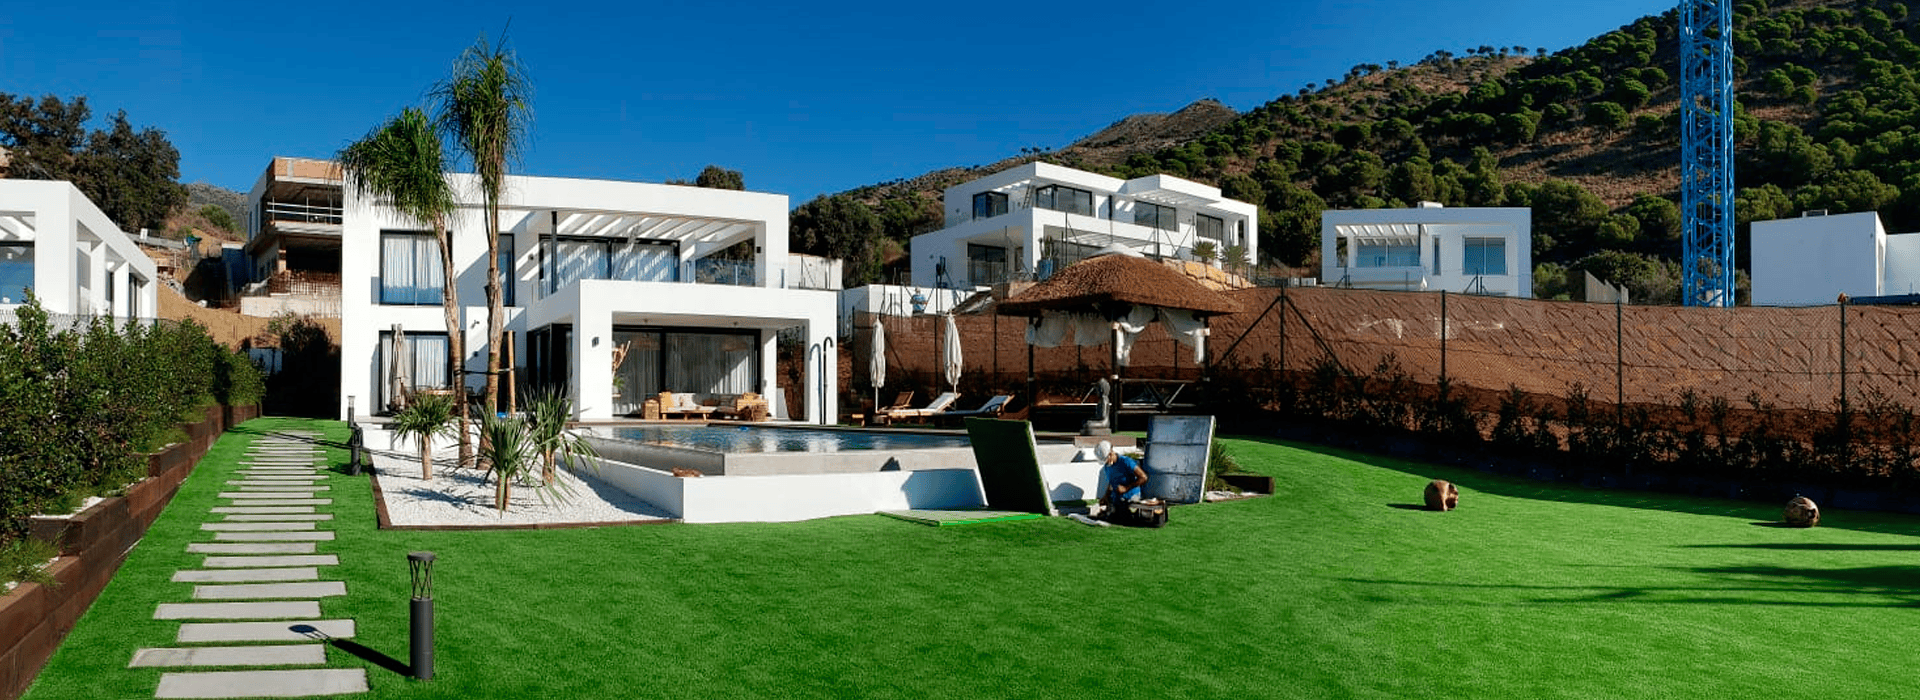 La mejor villa familiar en Málaga con zonas verdes, de relax y piscina